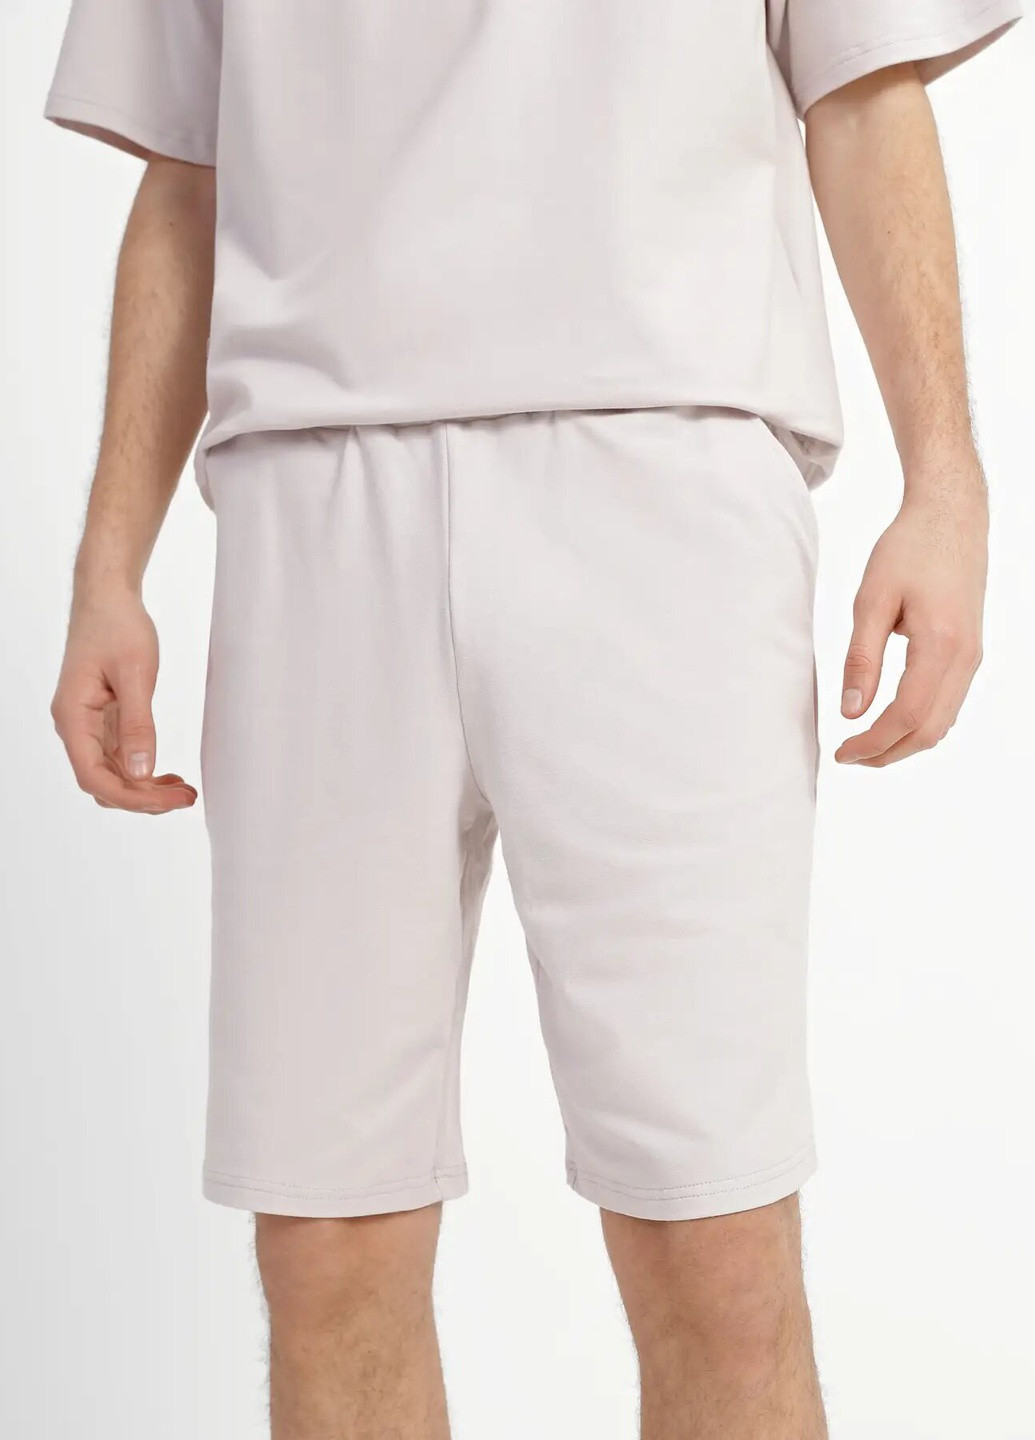 Бежевый летний комплект для мужчин футболка и шорты с шортами Роза